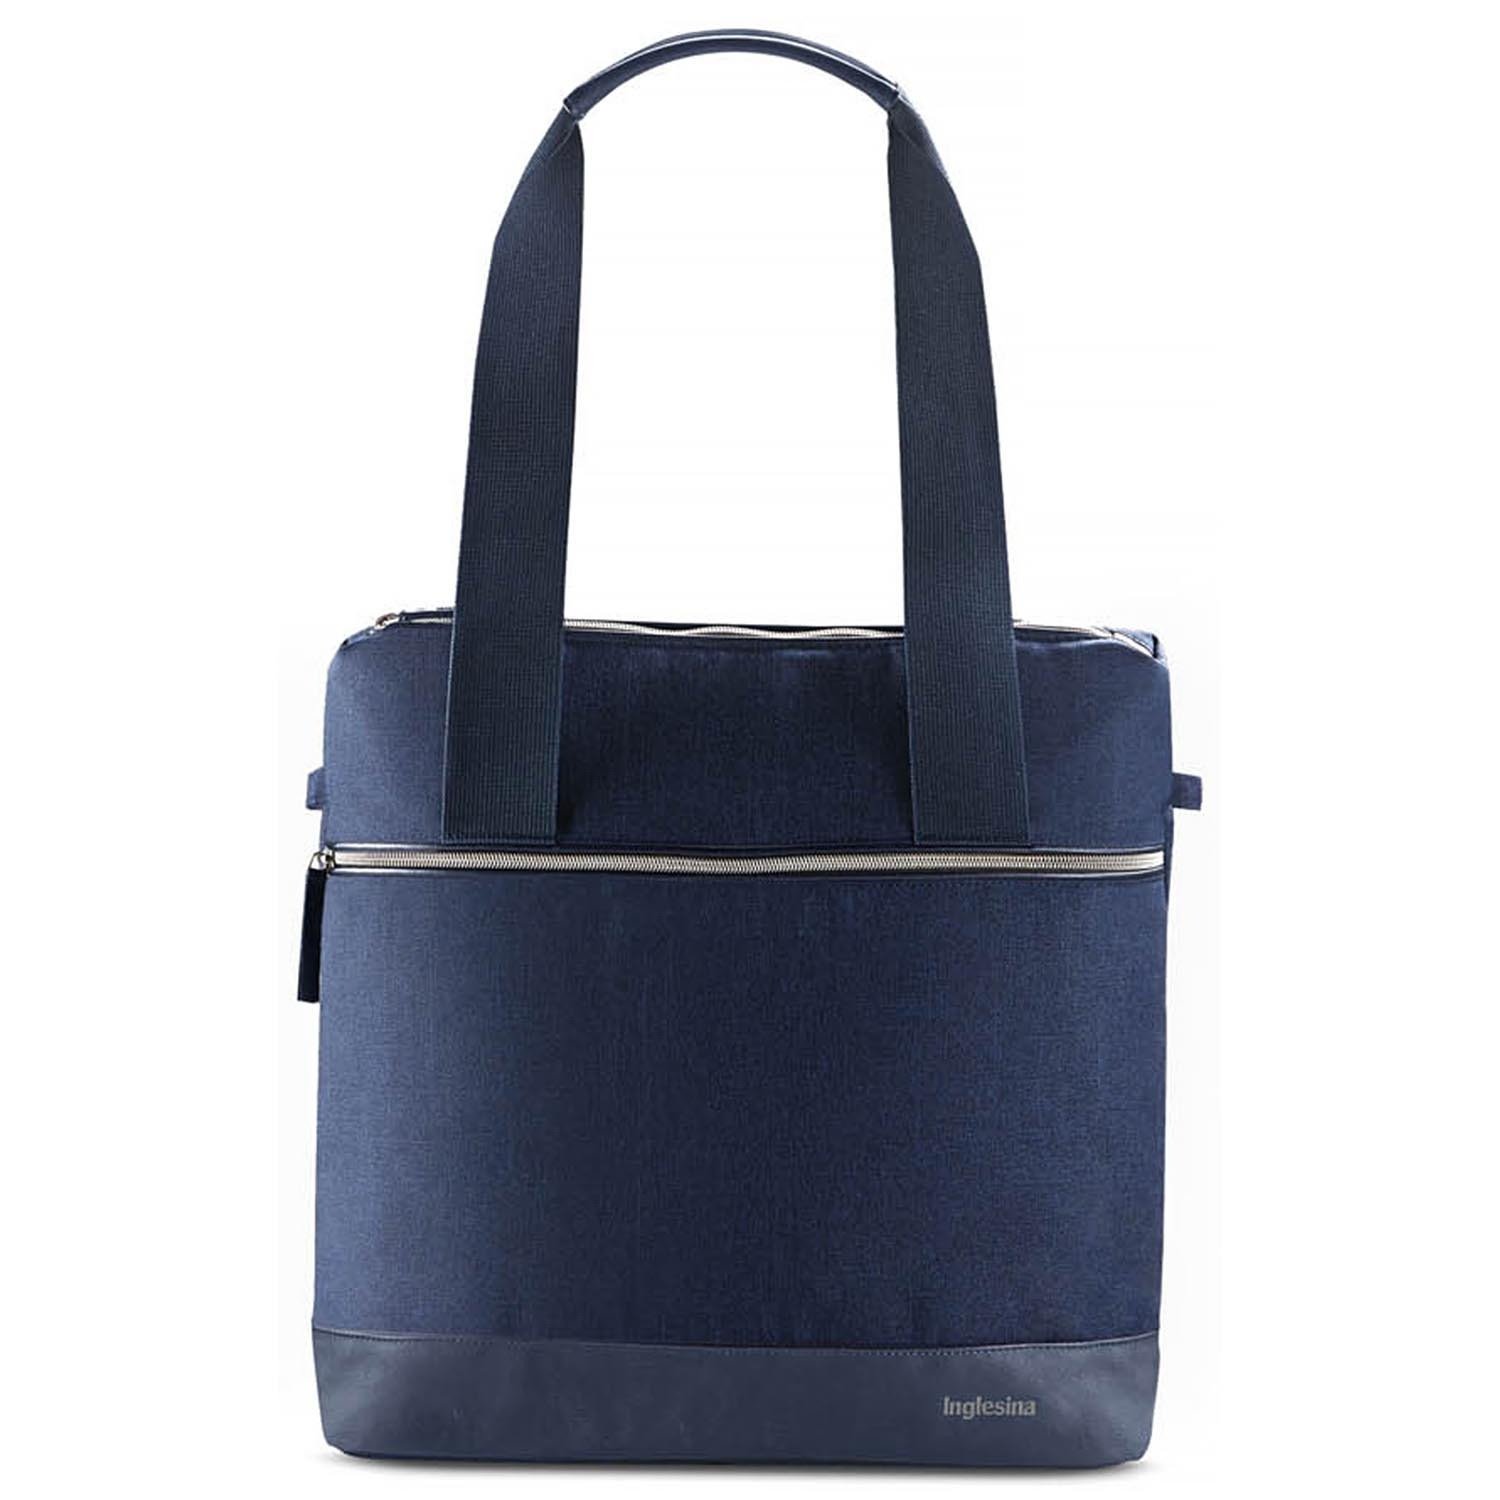 фото Сумка-рюкзак для коляски inglesina back bag aptica цвет: portland blue